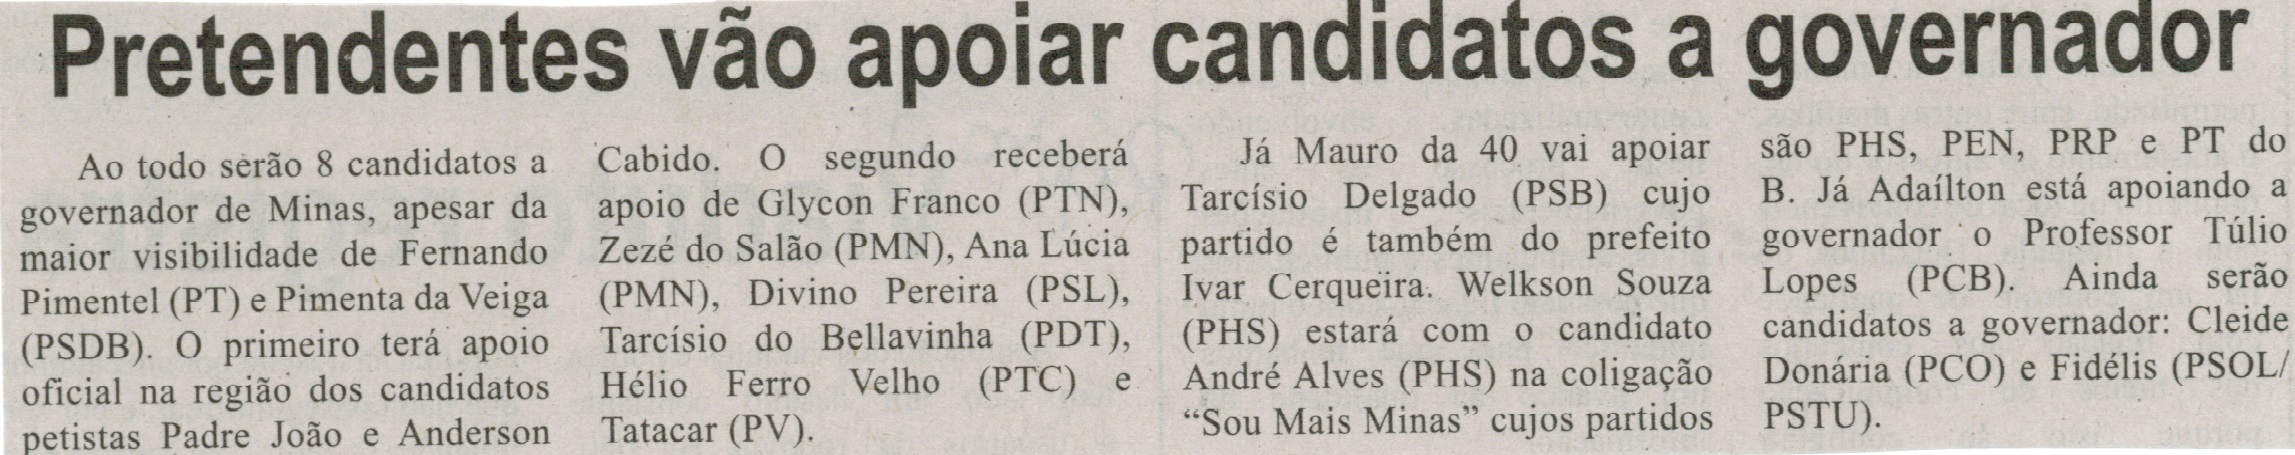 Pretendentes vão apoiar candidatos a governador. Correio de Minas, Conselheiro Lafaiete, 12 jul. 2014, p. 3.